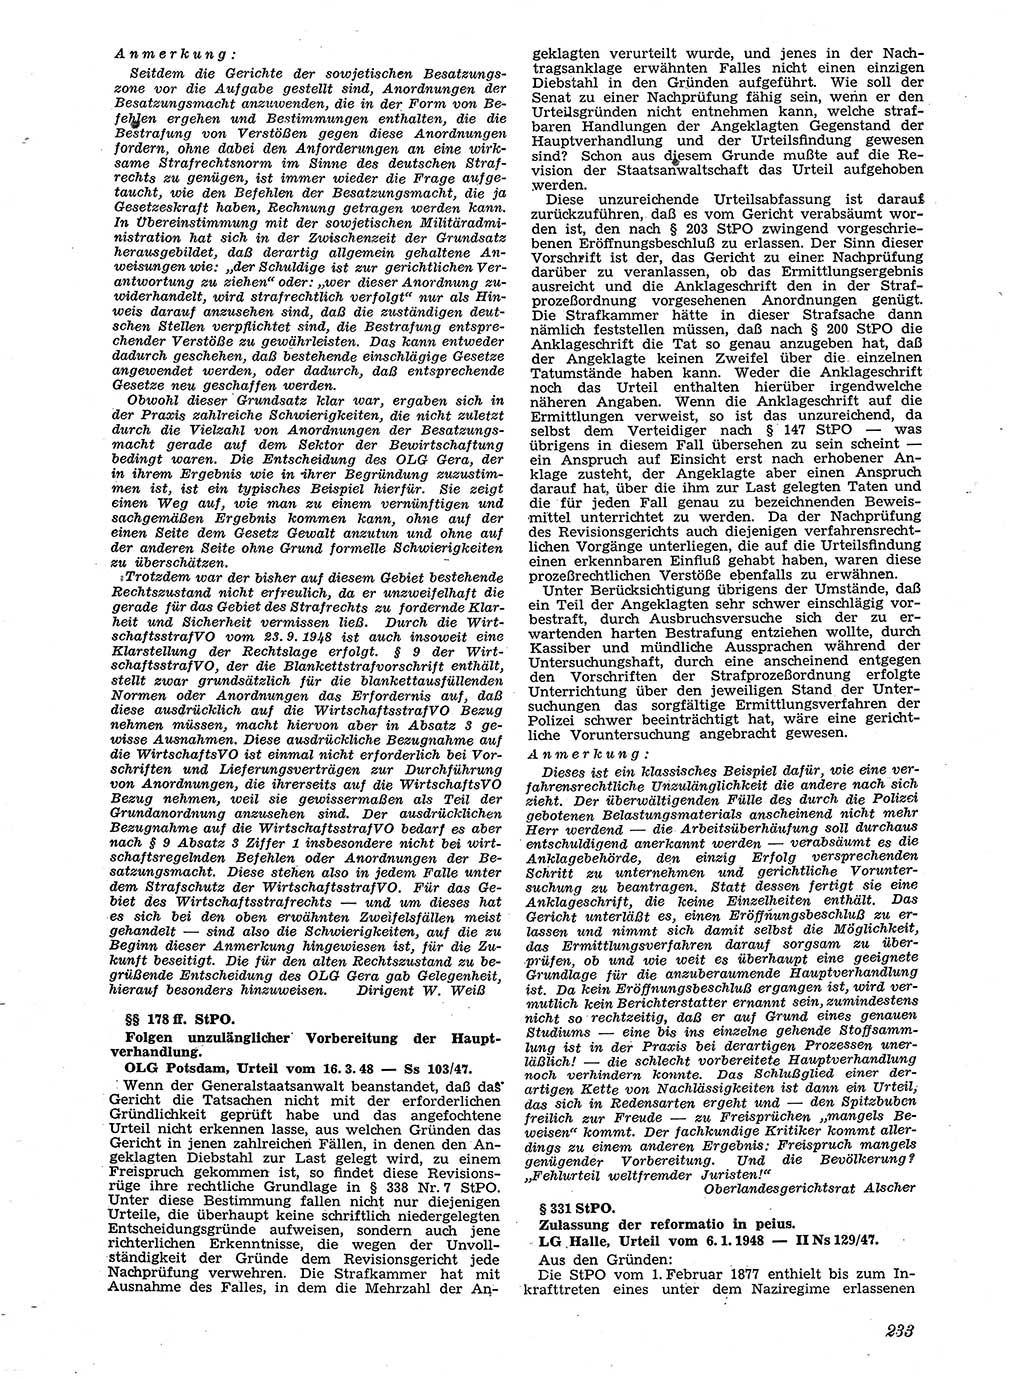 Neue Justiz (NJ), Zeitschrift für Recht und Rechtswissenschaft [Sowjetische Besatzungszone (SBZ) Deutschland], 2. Jahrgang 1948, Seite 233 (NJ SBZ Dtl. 1948, S. 233)